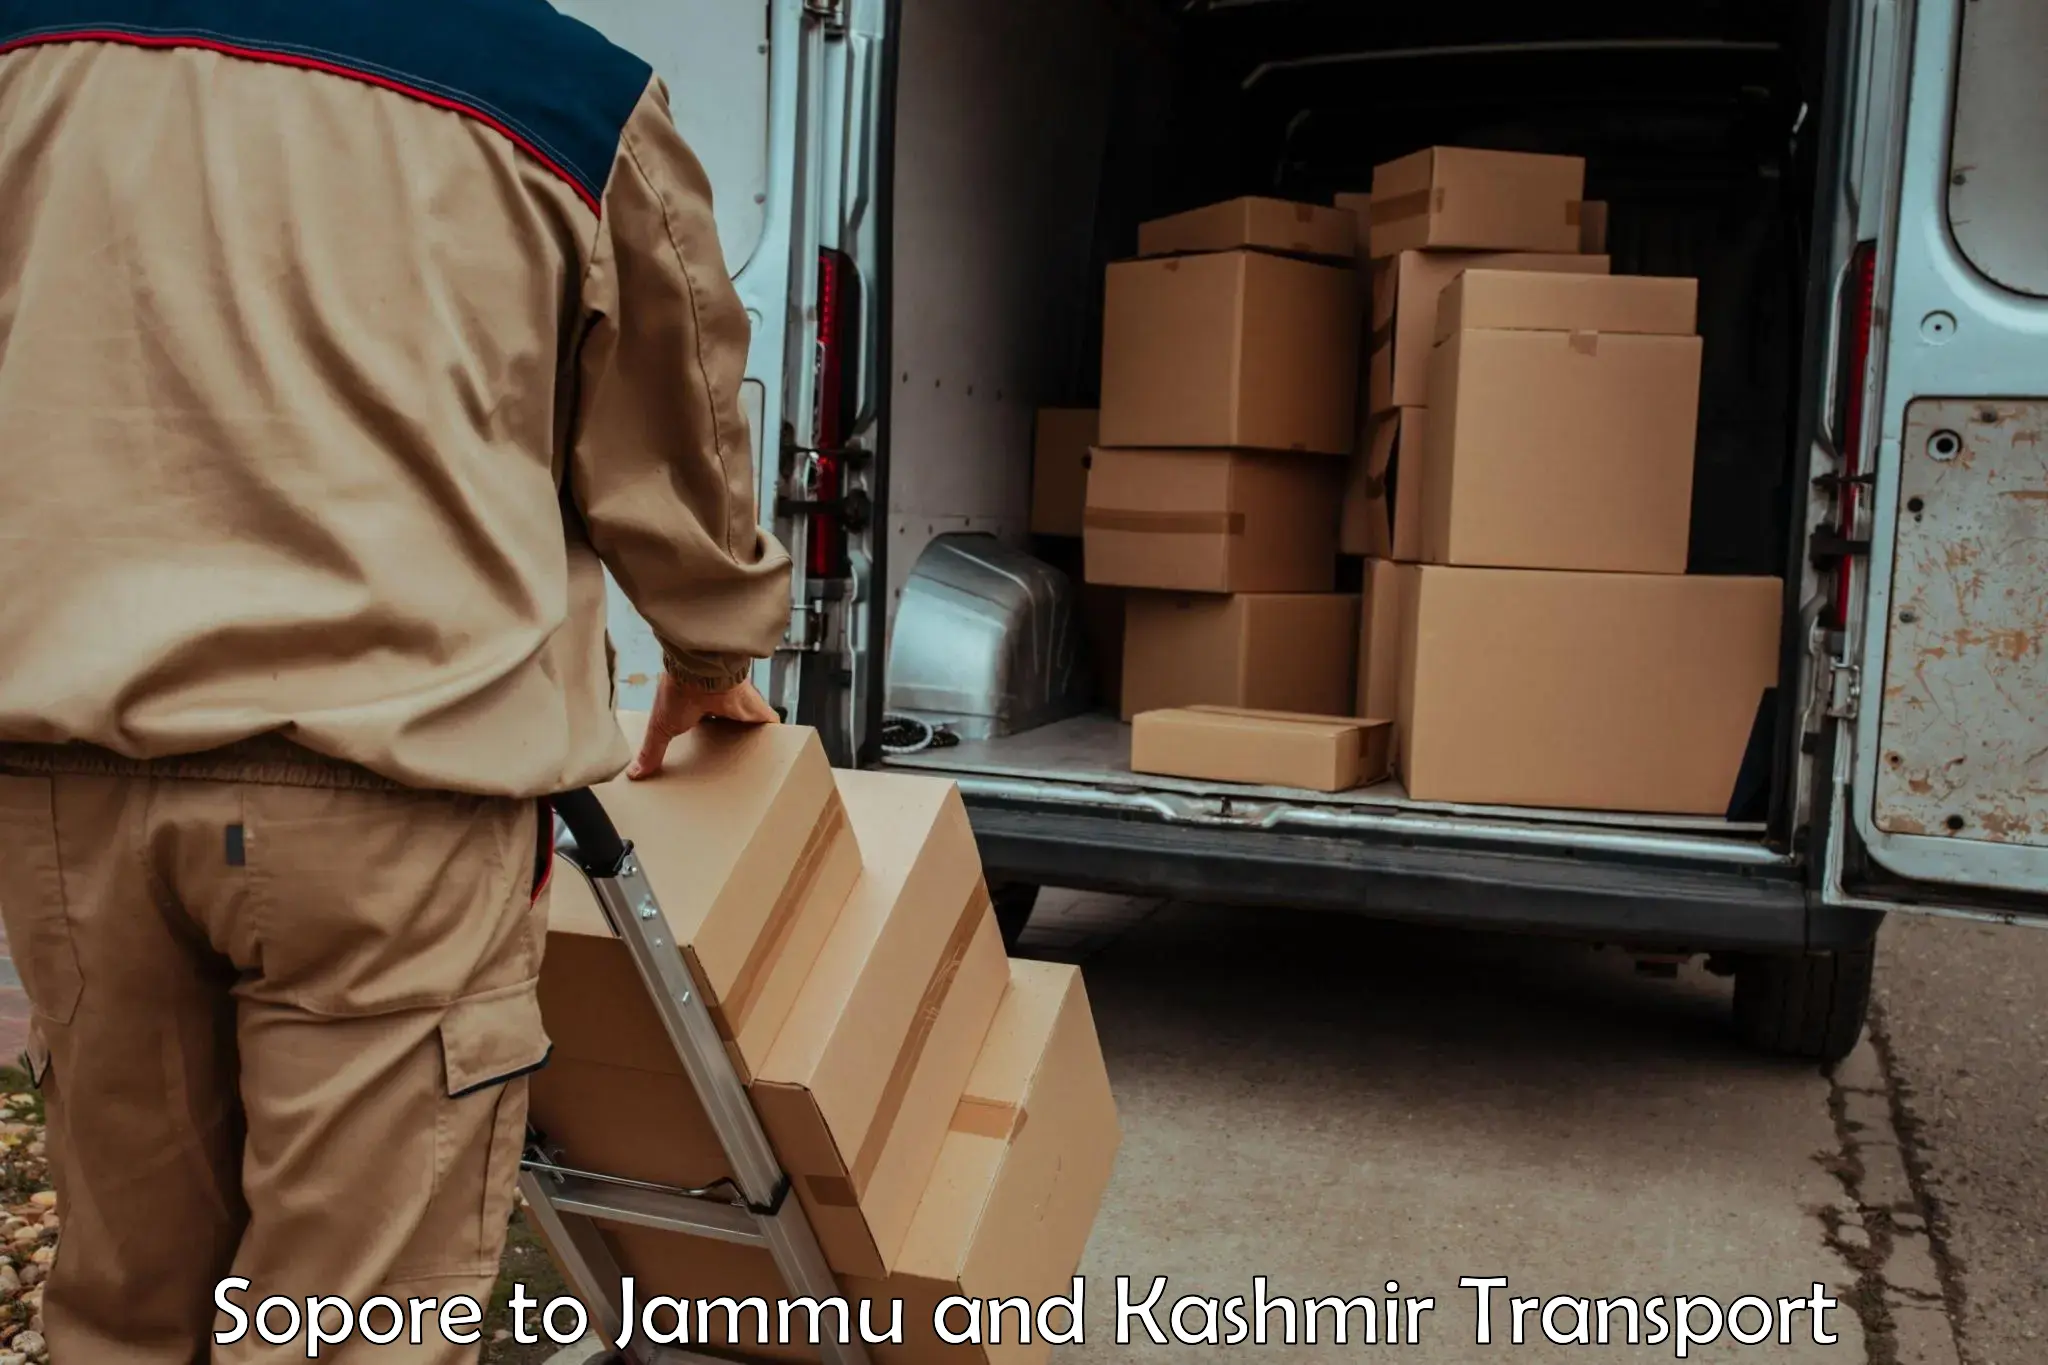 Transport in sharing Sopore to Srinagar Kashmir